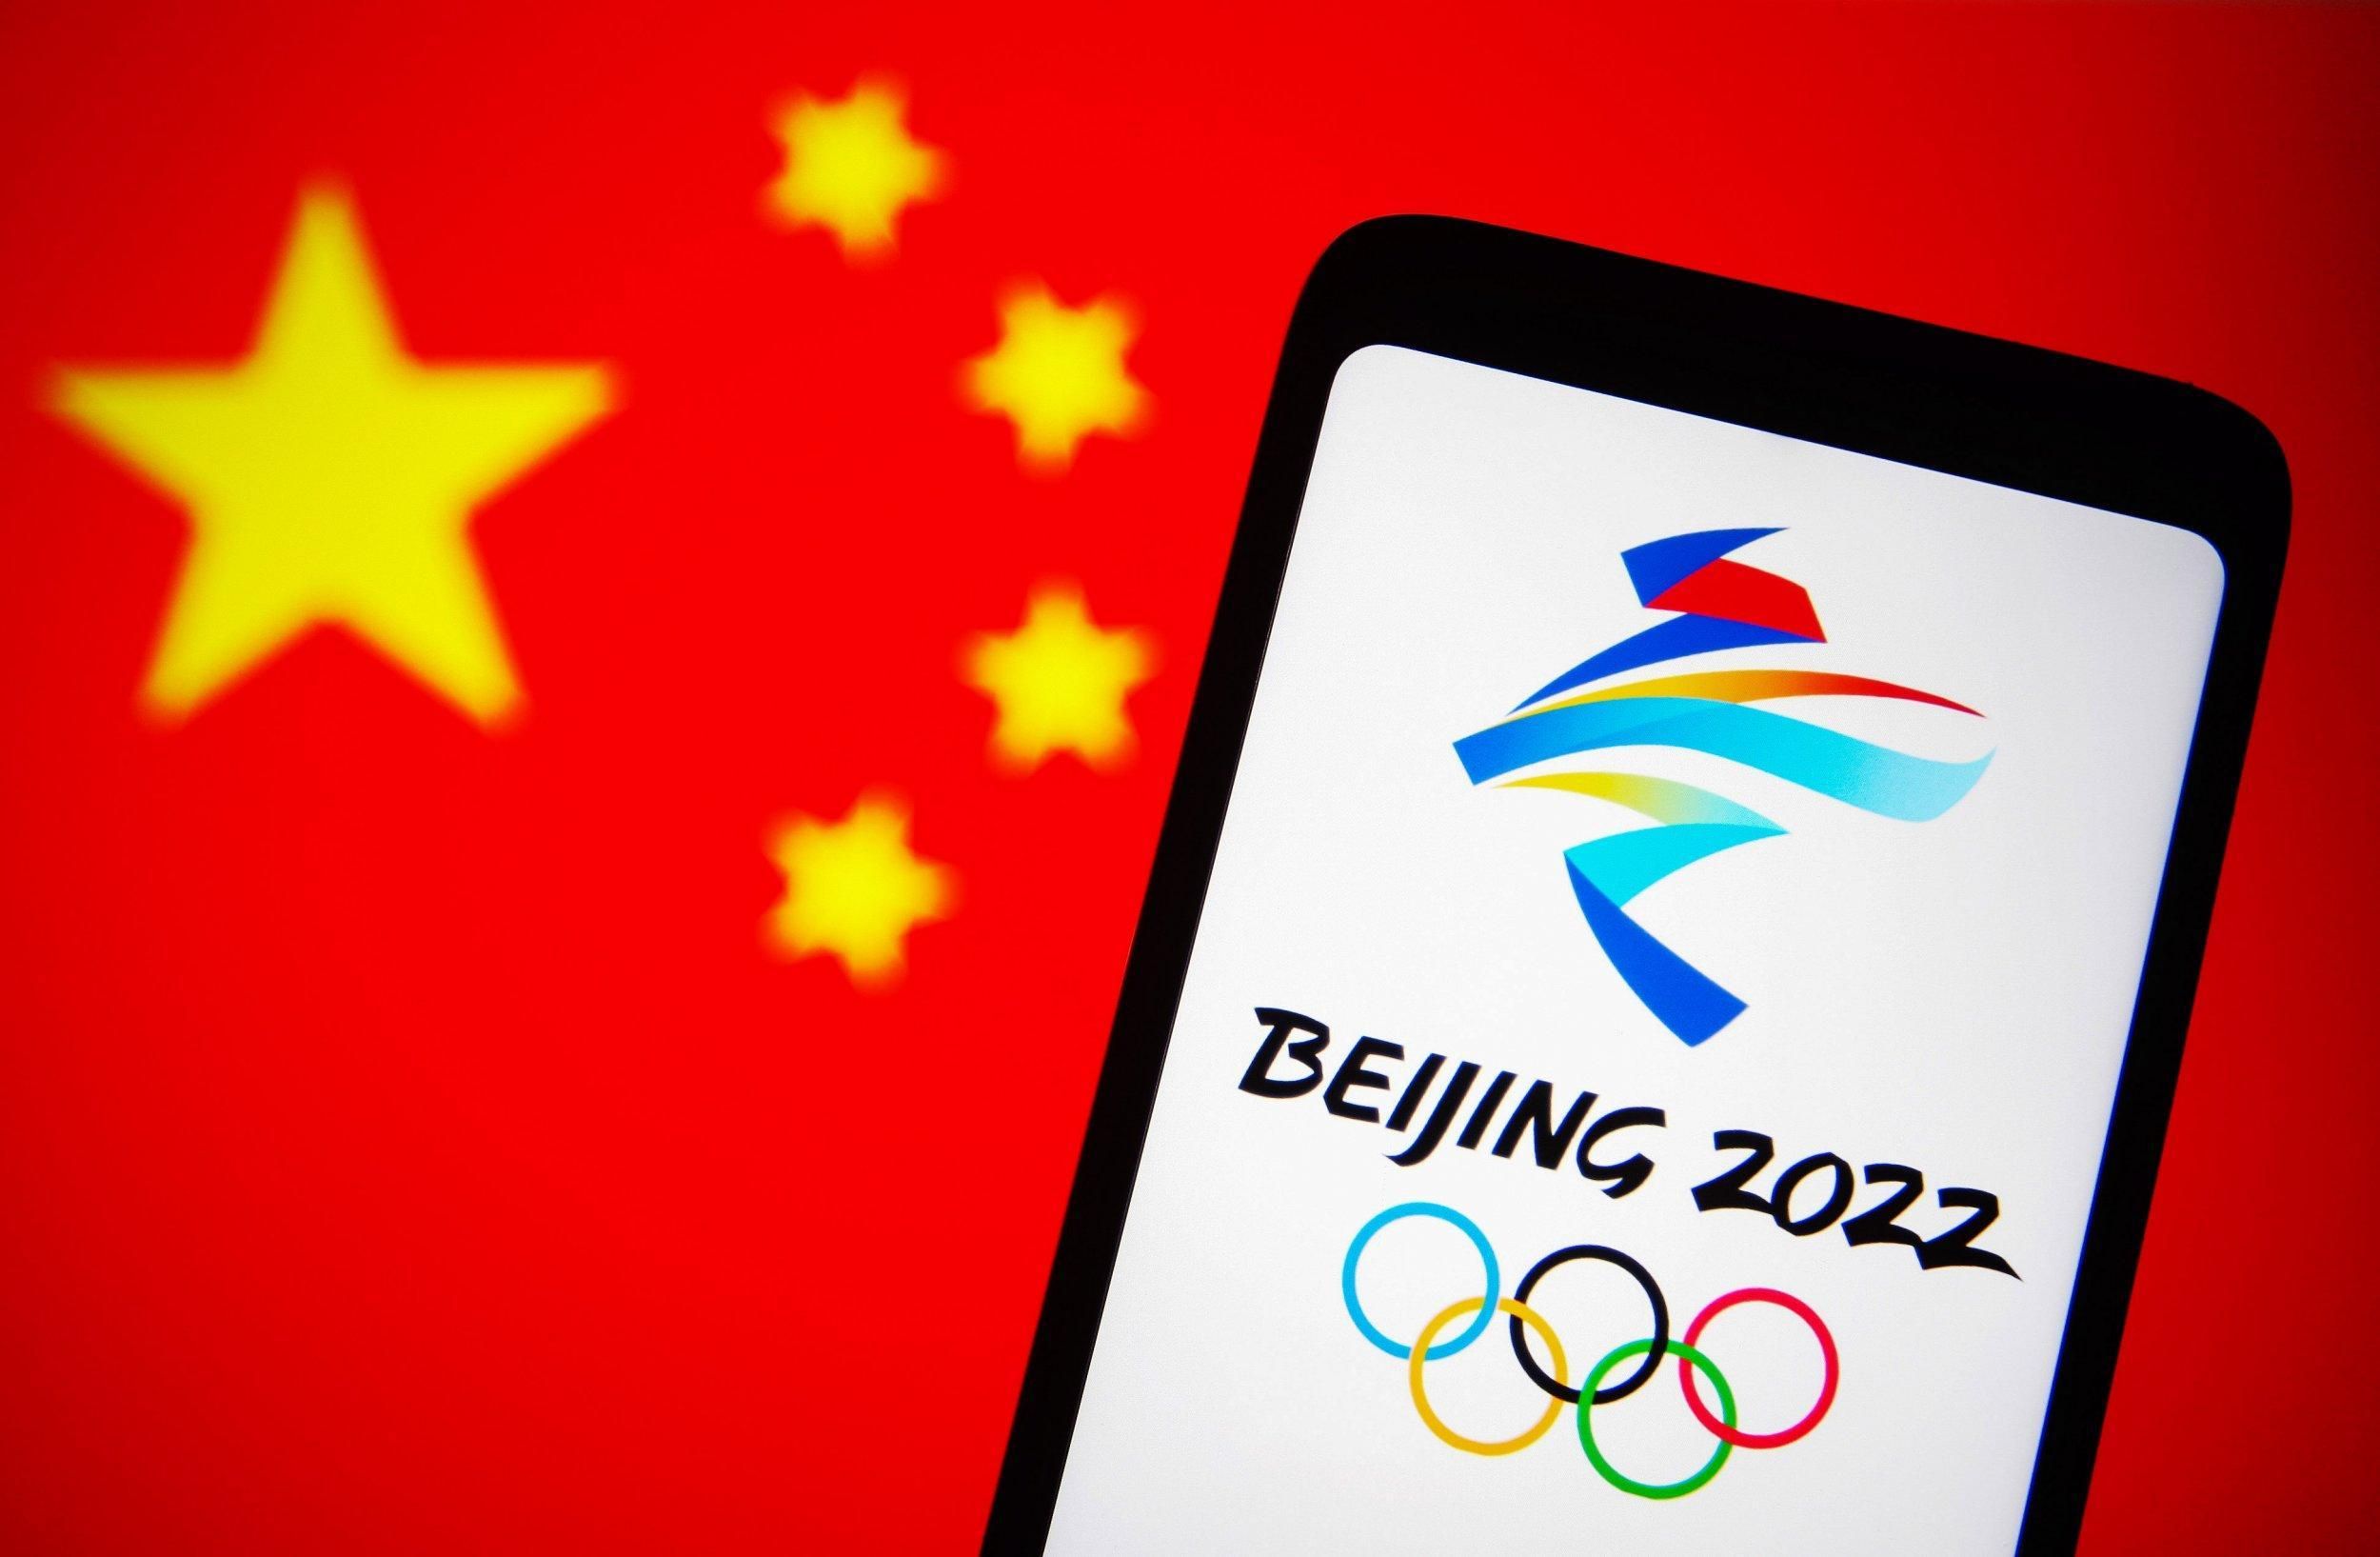 Сборная Тайваня будет бойкотировать церемонии Олимпиады-2022 из-за конфликта с Китаем